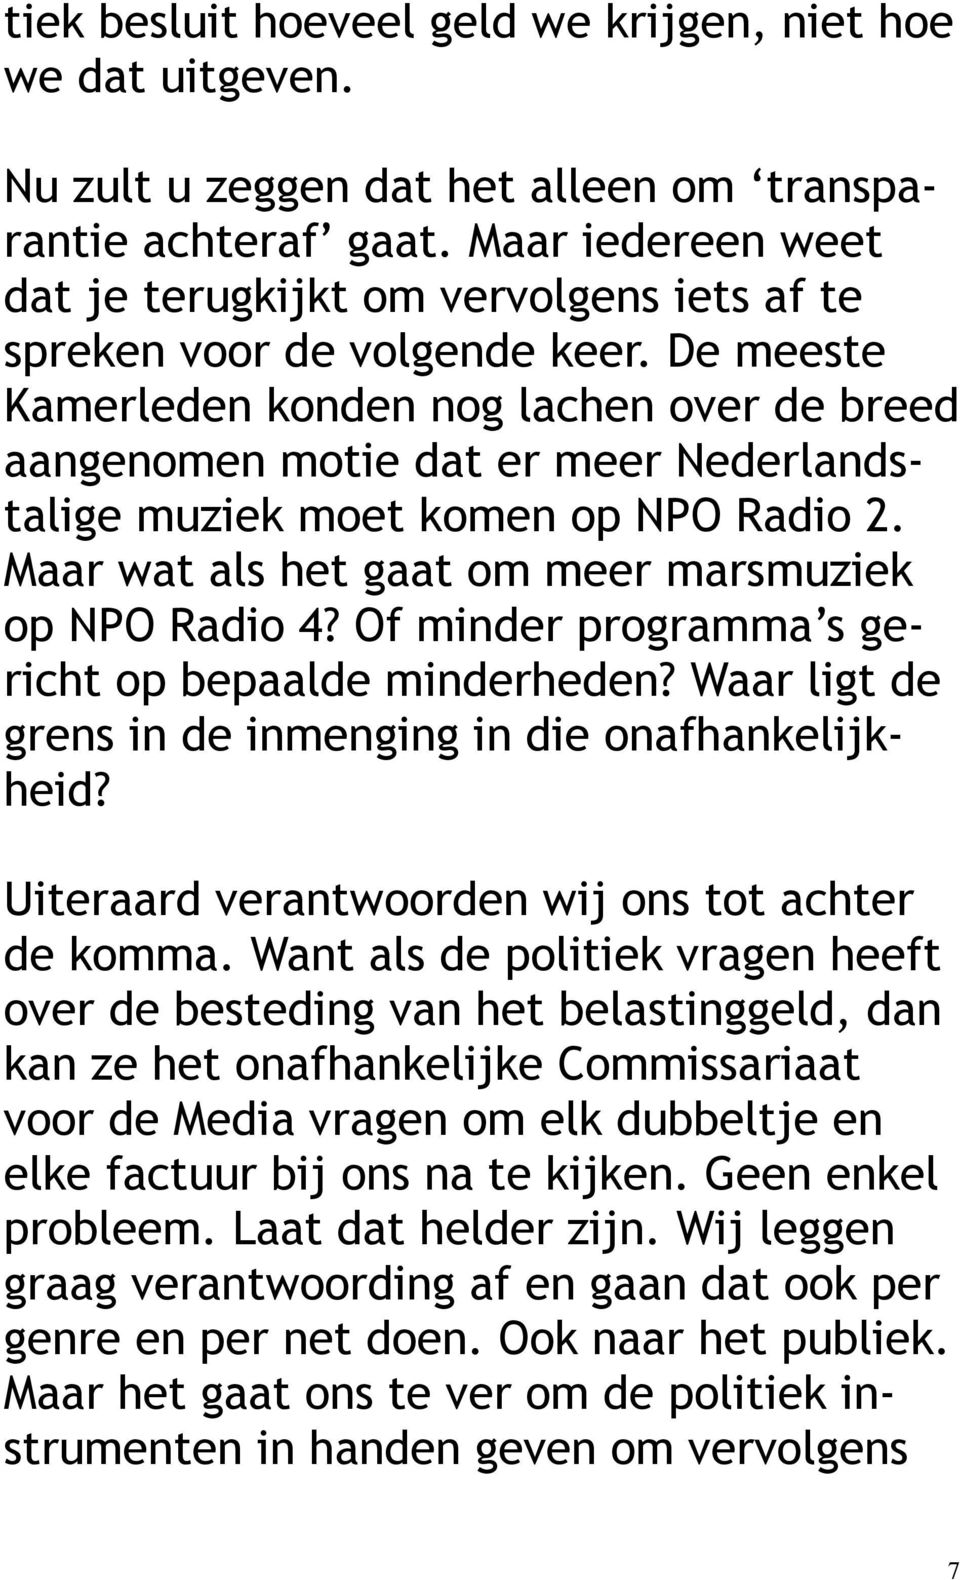 De meeste Kamerleden konden nog lachen over de breed aangenomen motie dat er meer Nederlandstalige muziek moet komen op NPO Radio 2. Maar wat als het gaat om meer marsmuziek op NPO Radio 4?